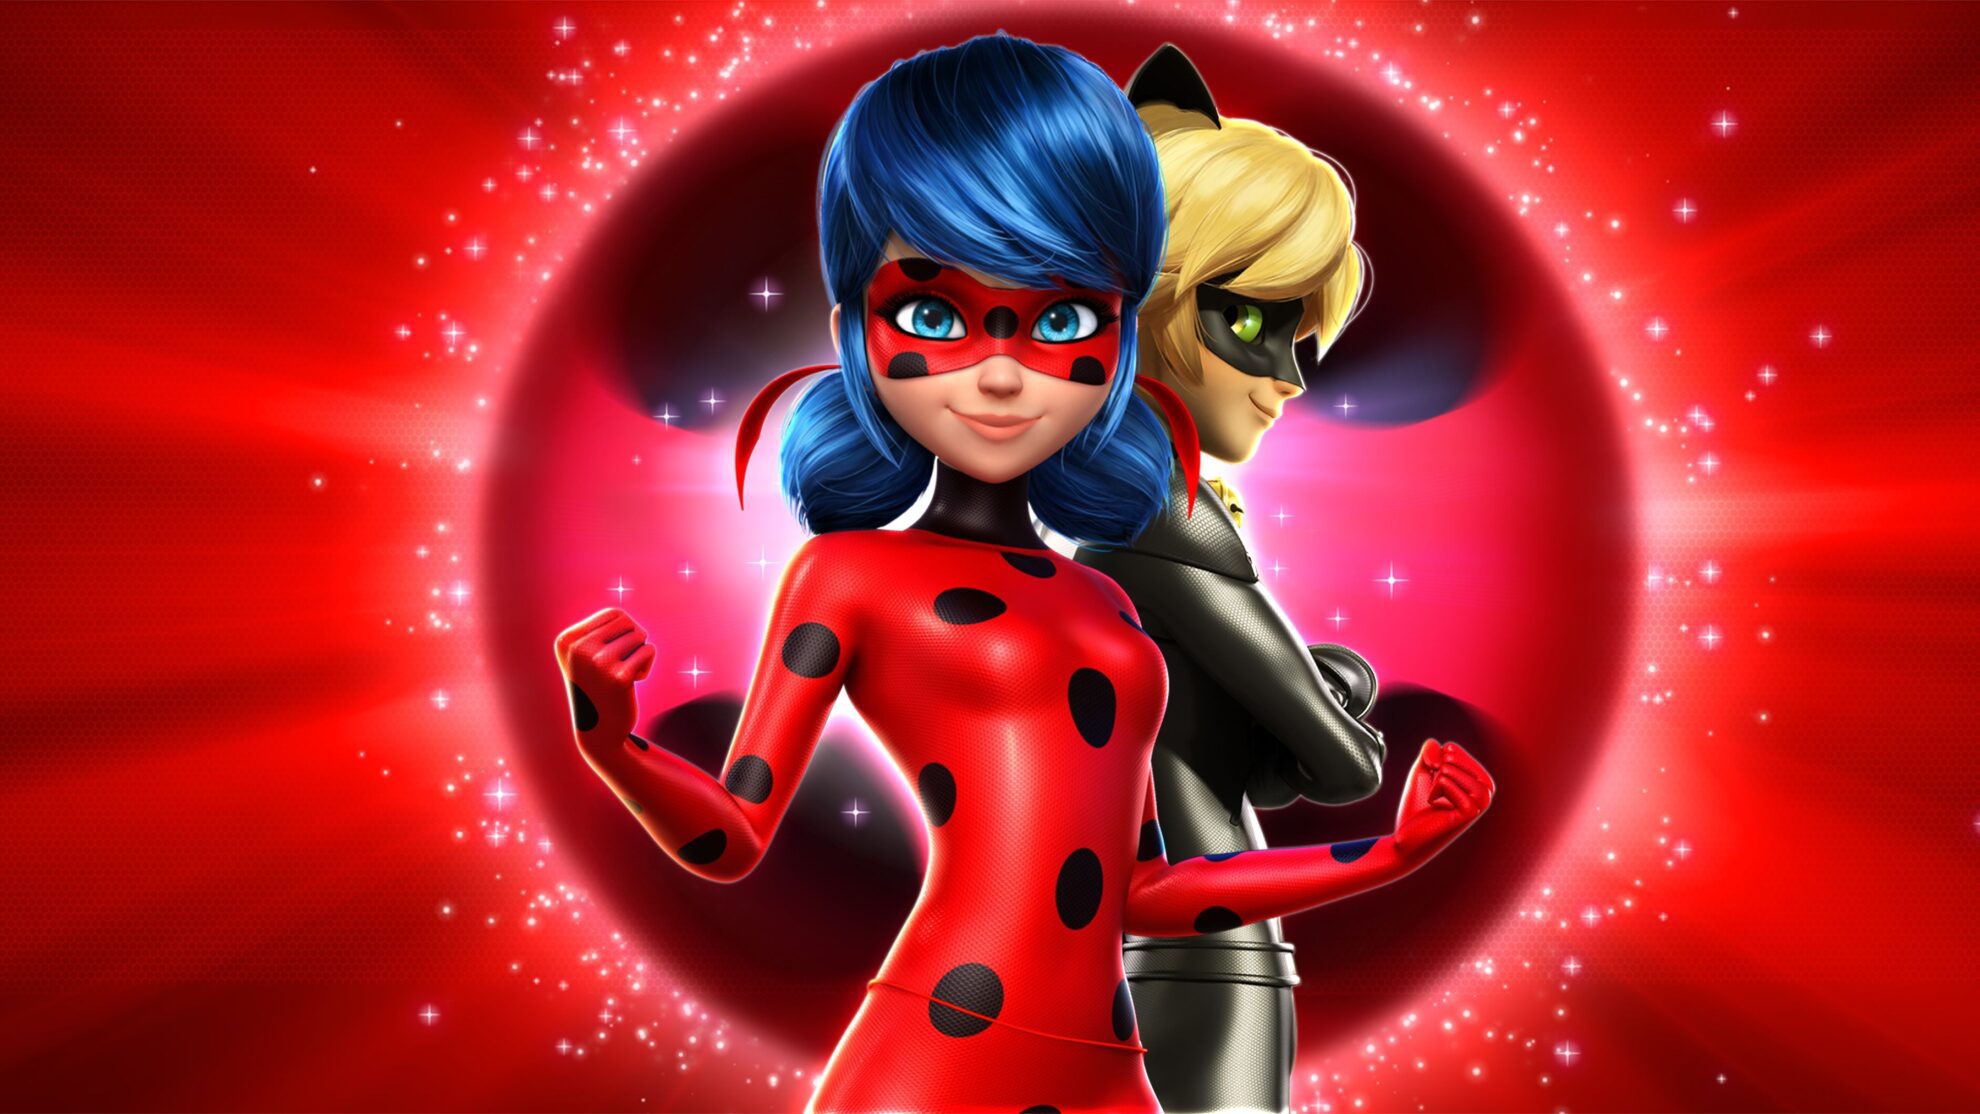 Sinopse do filme de Miraculous: Ladybug e Cat Noir é divulgada